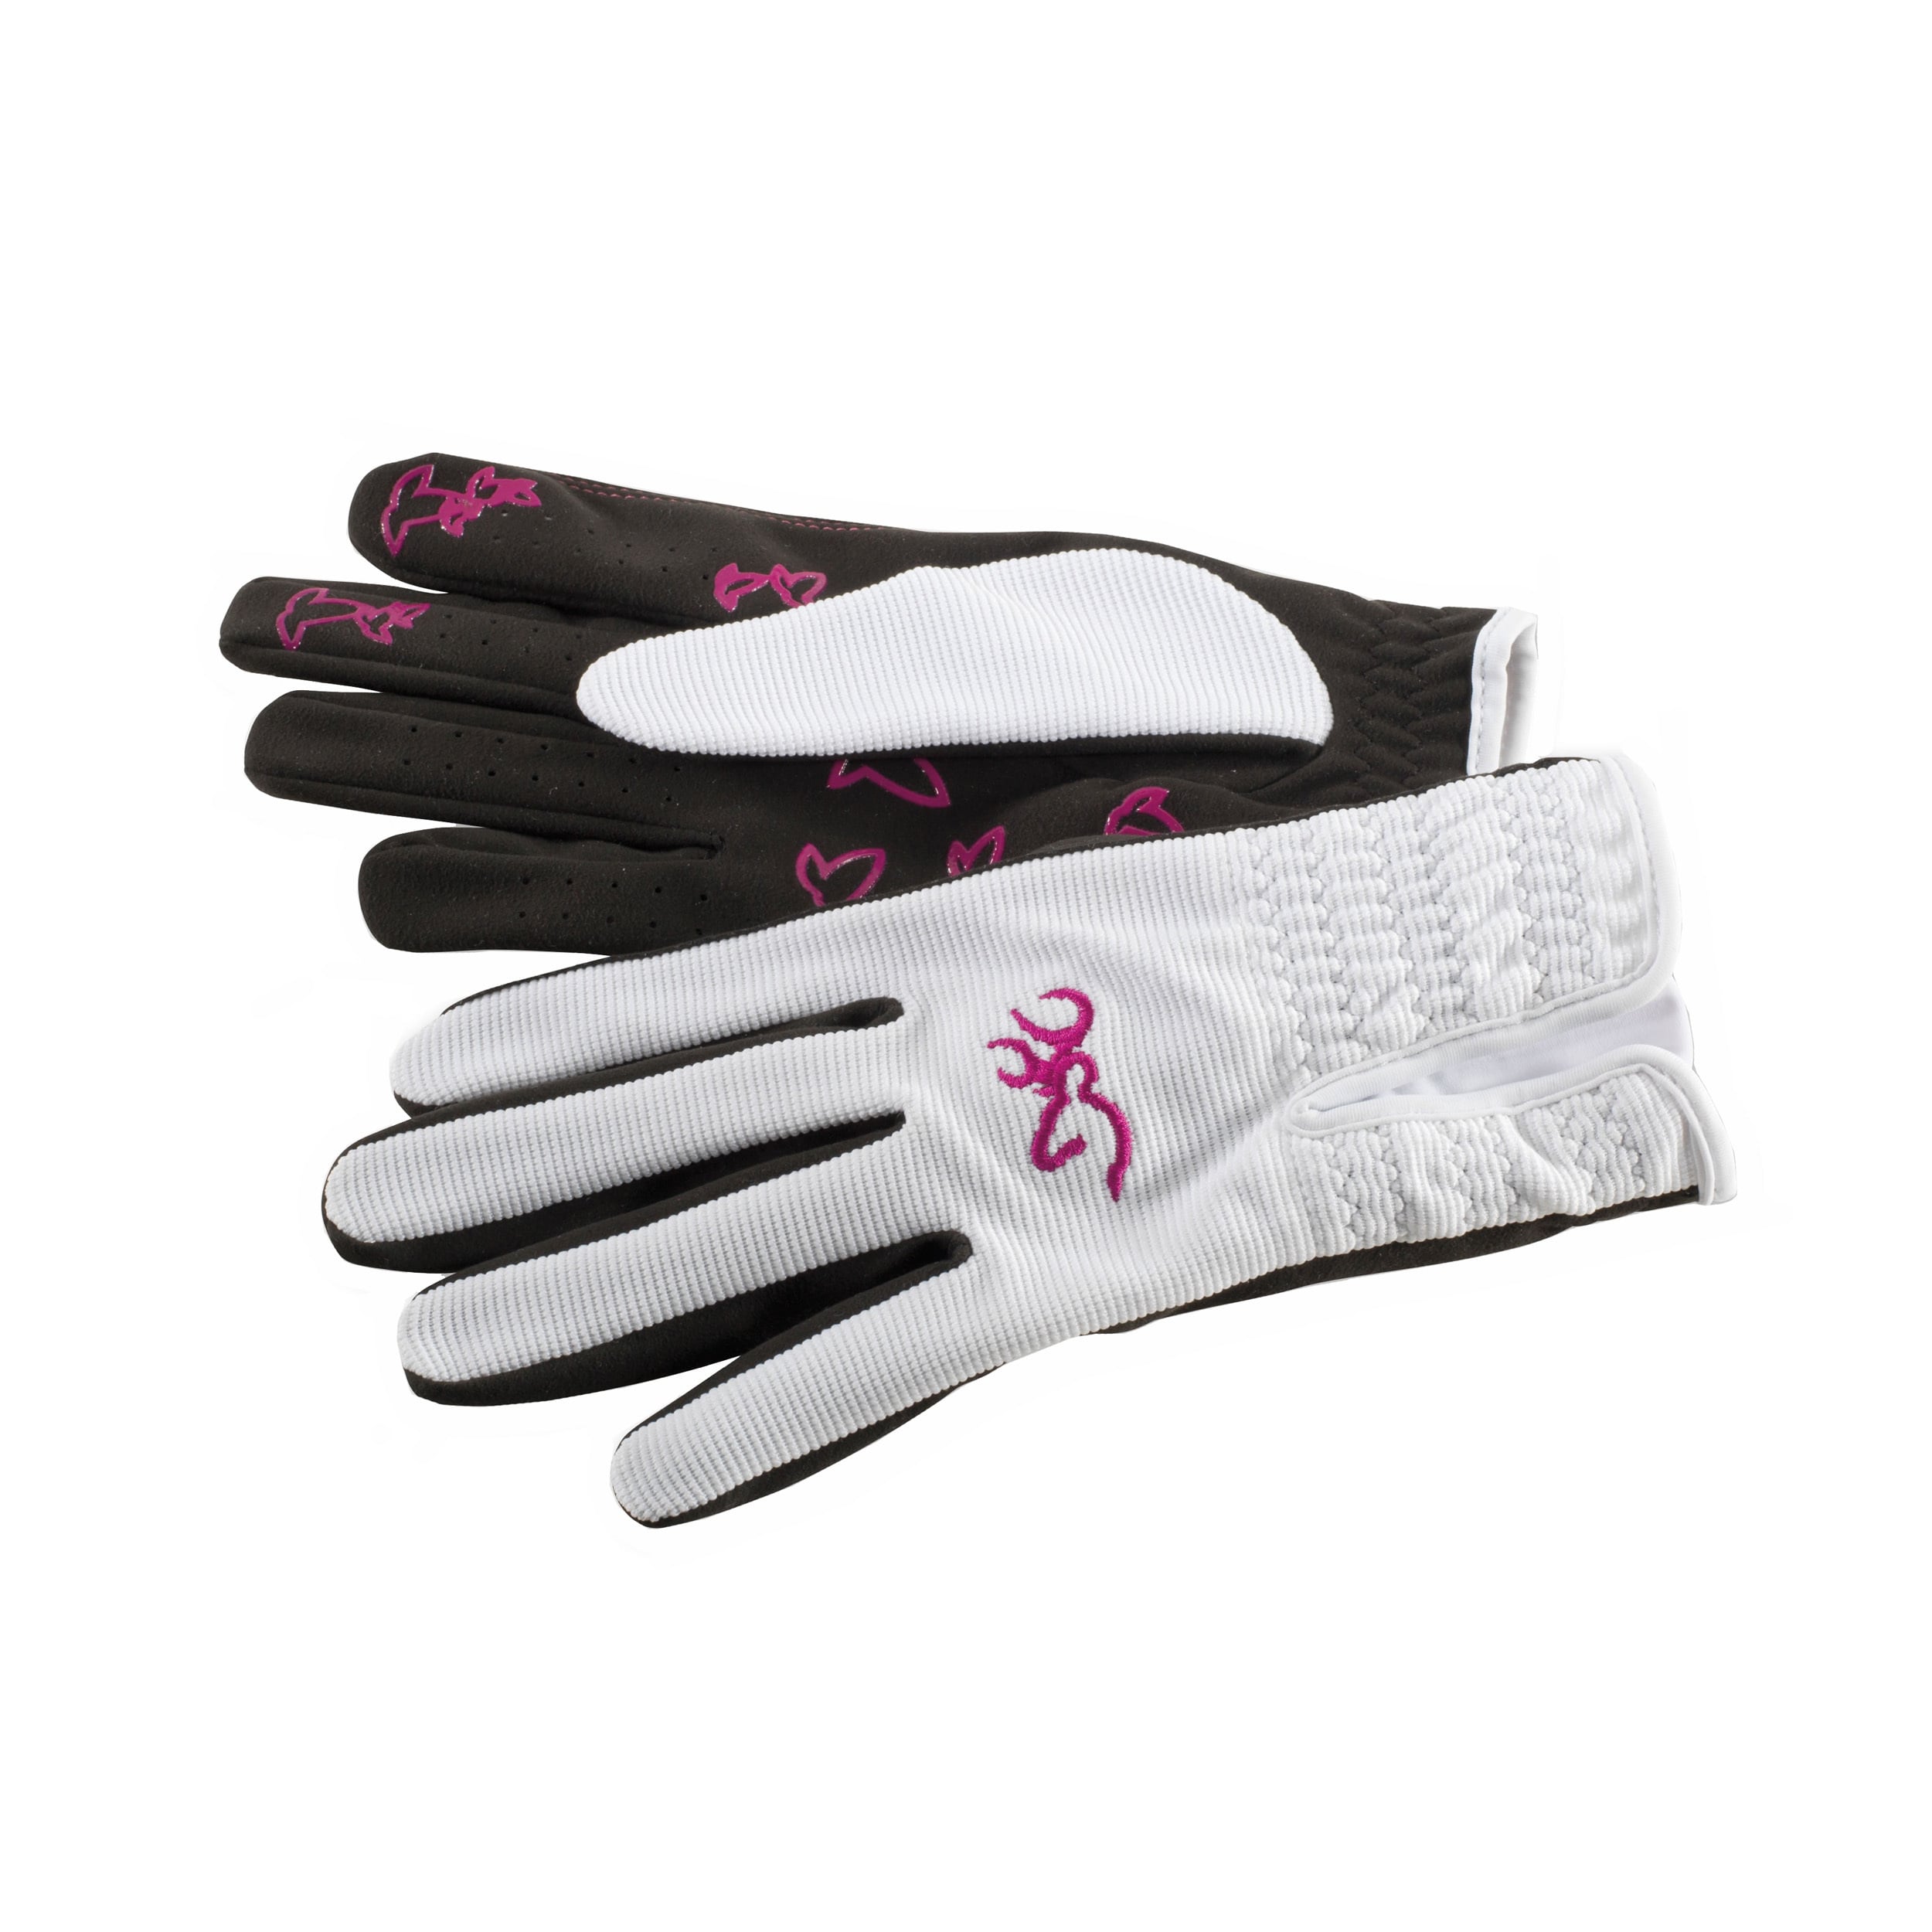 white suede gloves